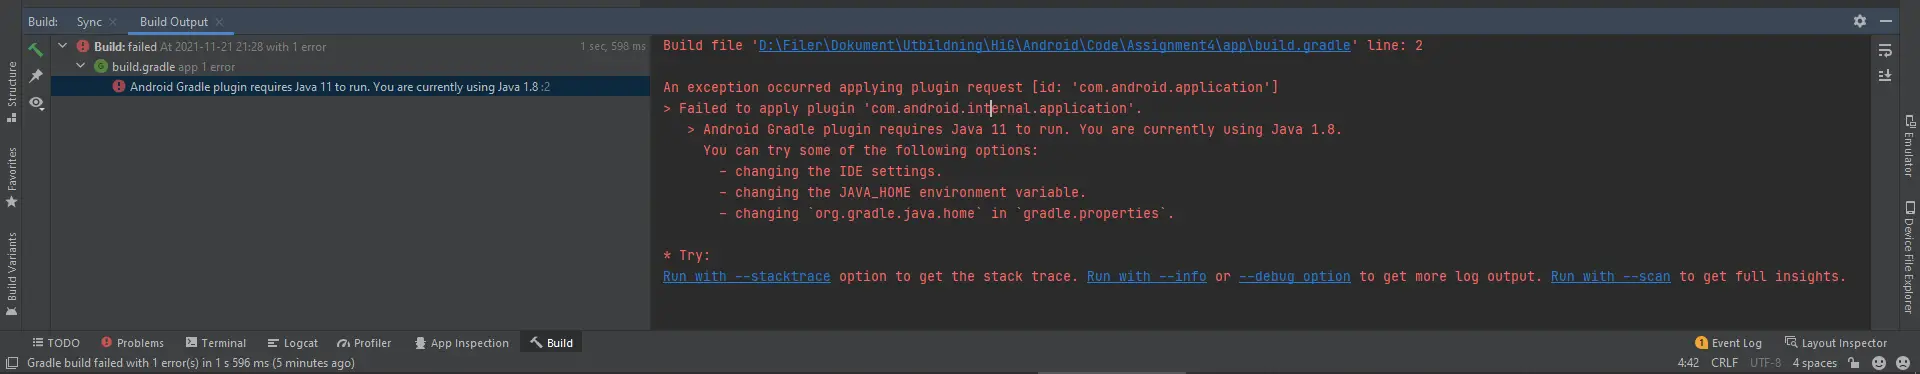 Das Android-Gradle-Plug-in erfordert Java 11, um ausgeführt zu werden.  Sie verwenden derzeit Java 1.8